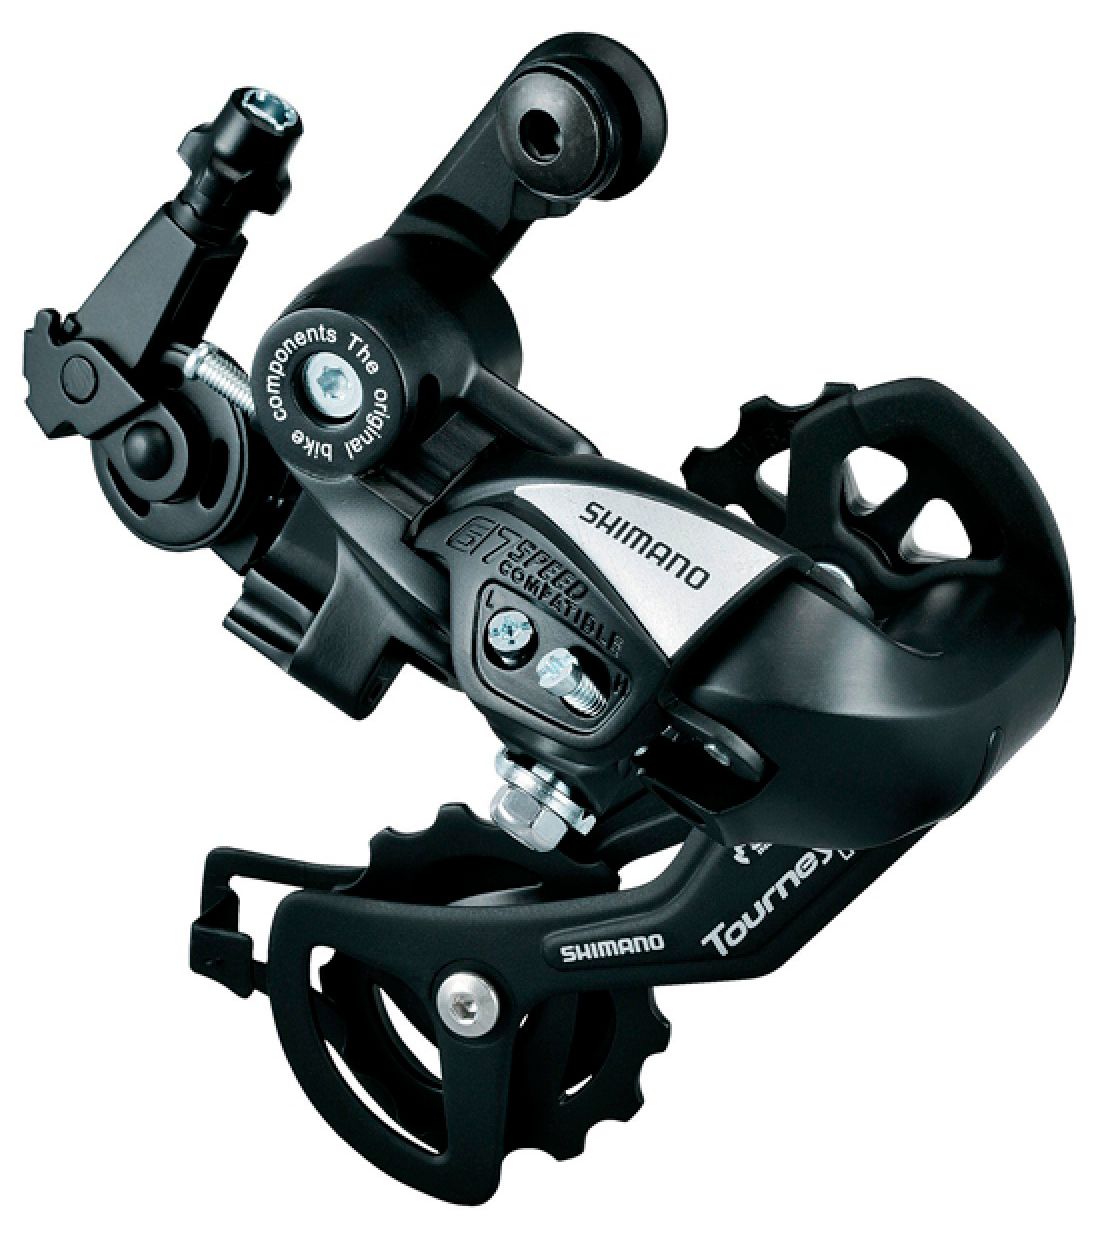  Переключатель задний для велосипеда Shimano Tourney TX55, 6/7 ск., крепление на петух